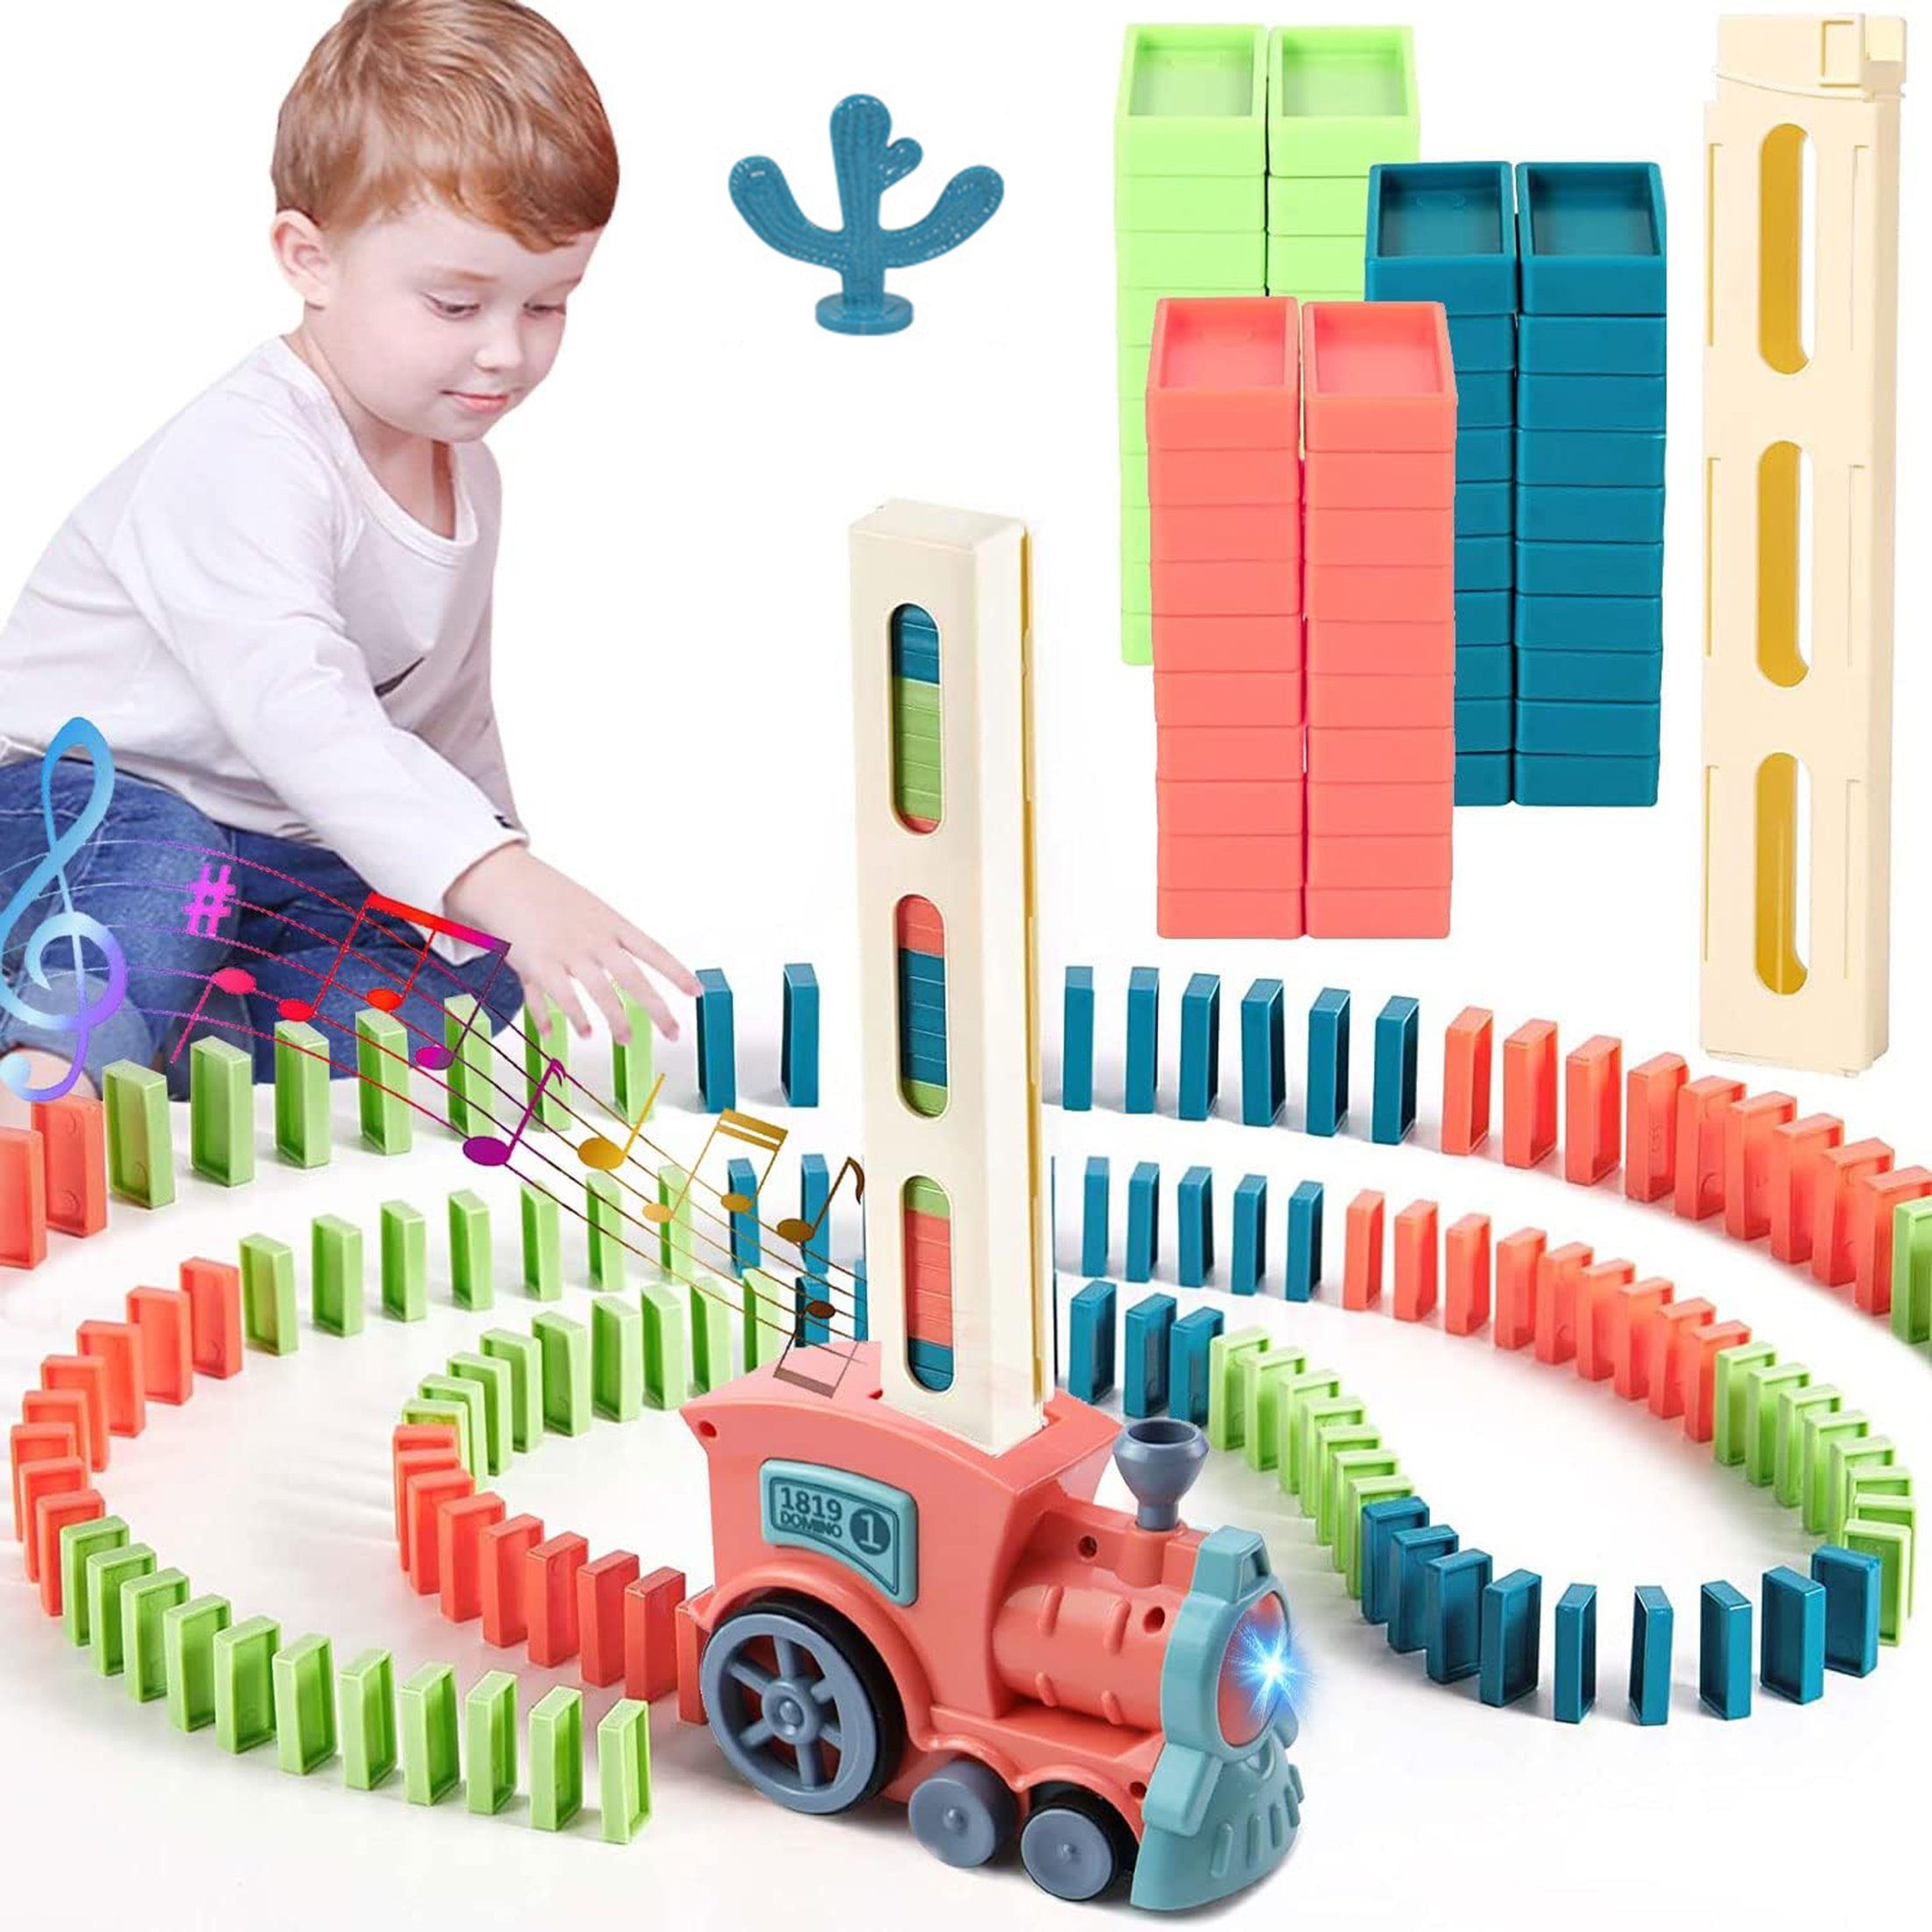 Kind Ja Lernspielzeug Domino-Spielzeugset, Stapelspielzeug, automatischer Domino-Zug,Schiene, Lernspielzeug für Kinder, 60 pcs Domino-Zug mit Lichtern und Musik